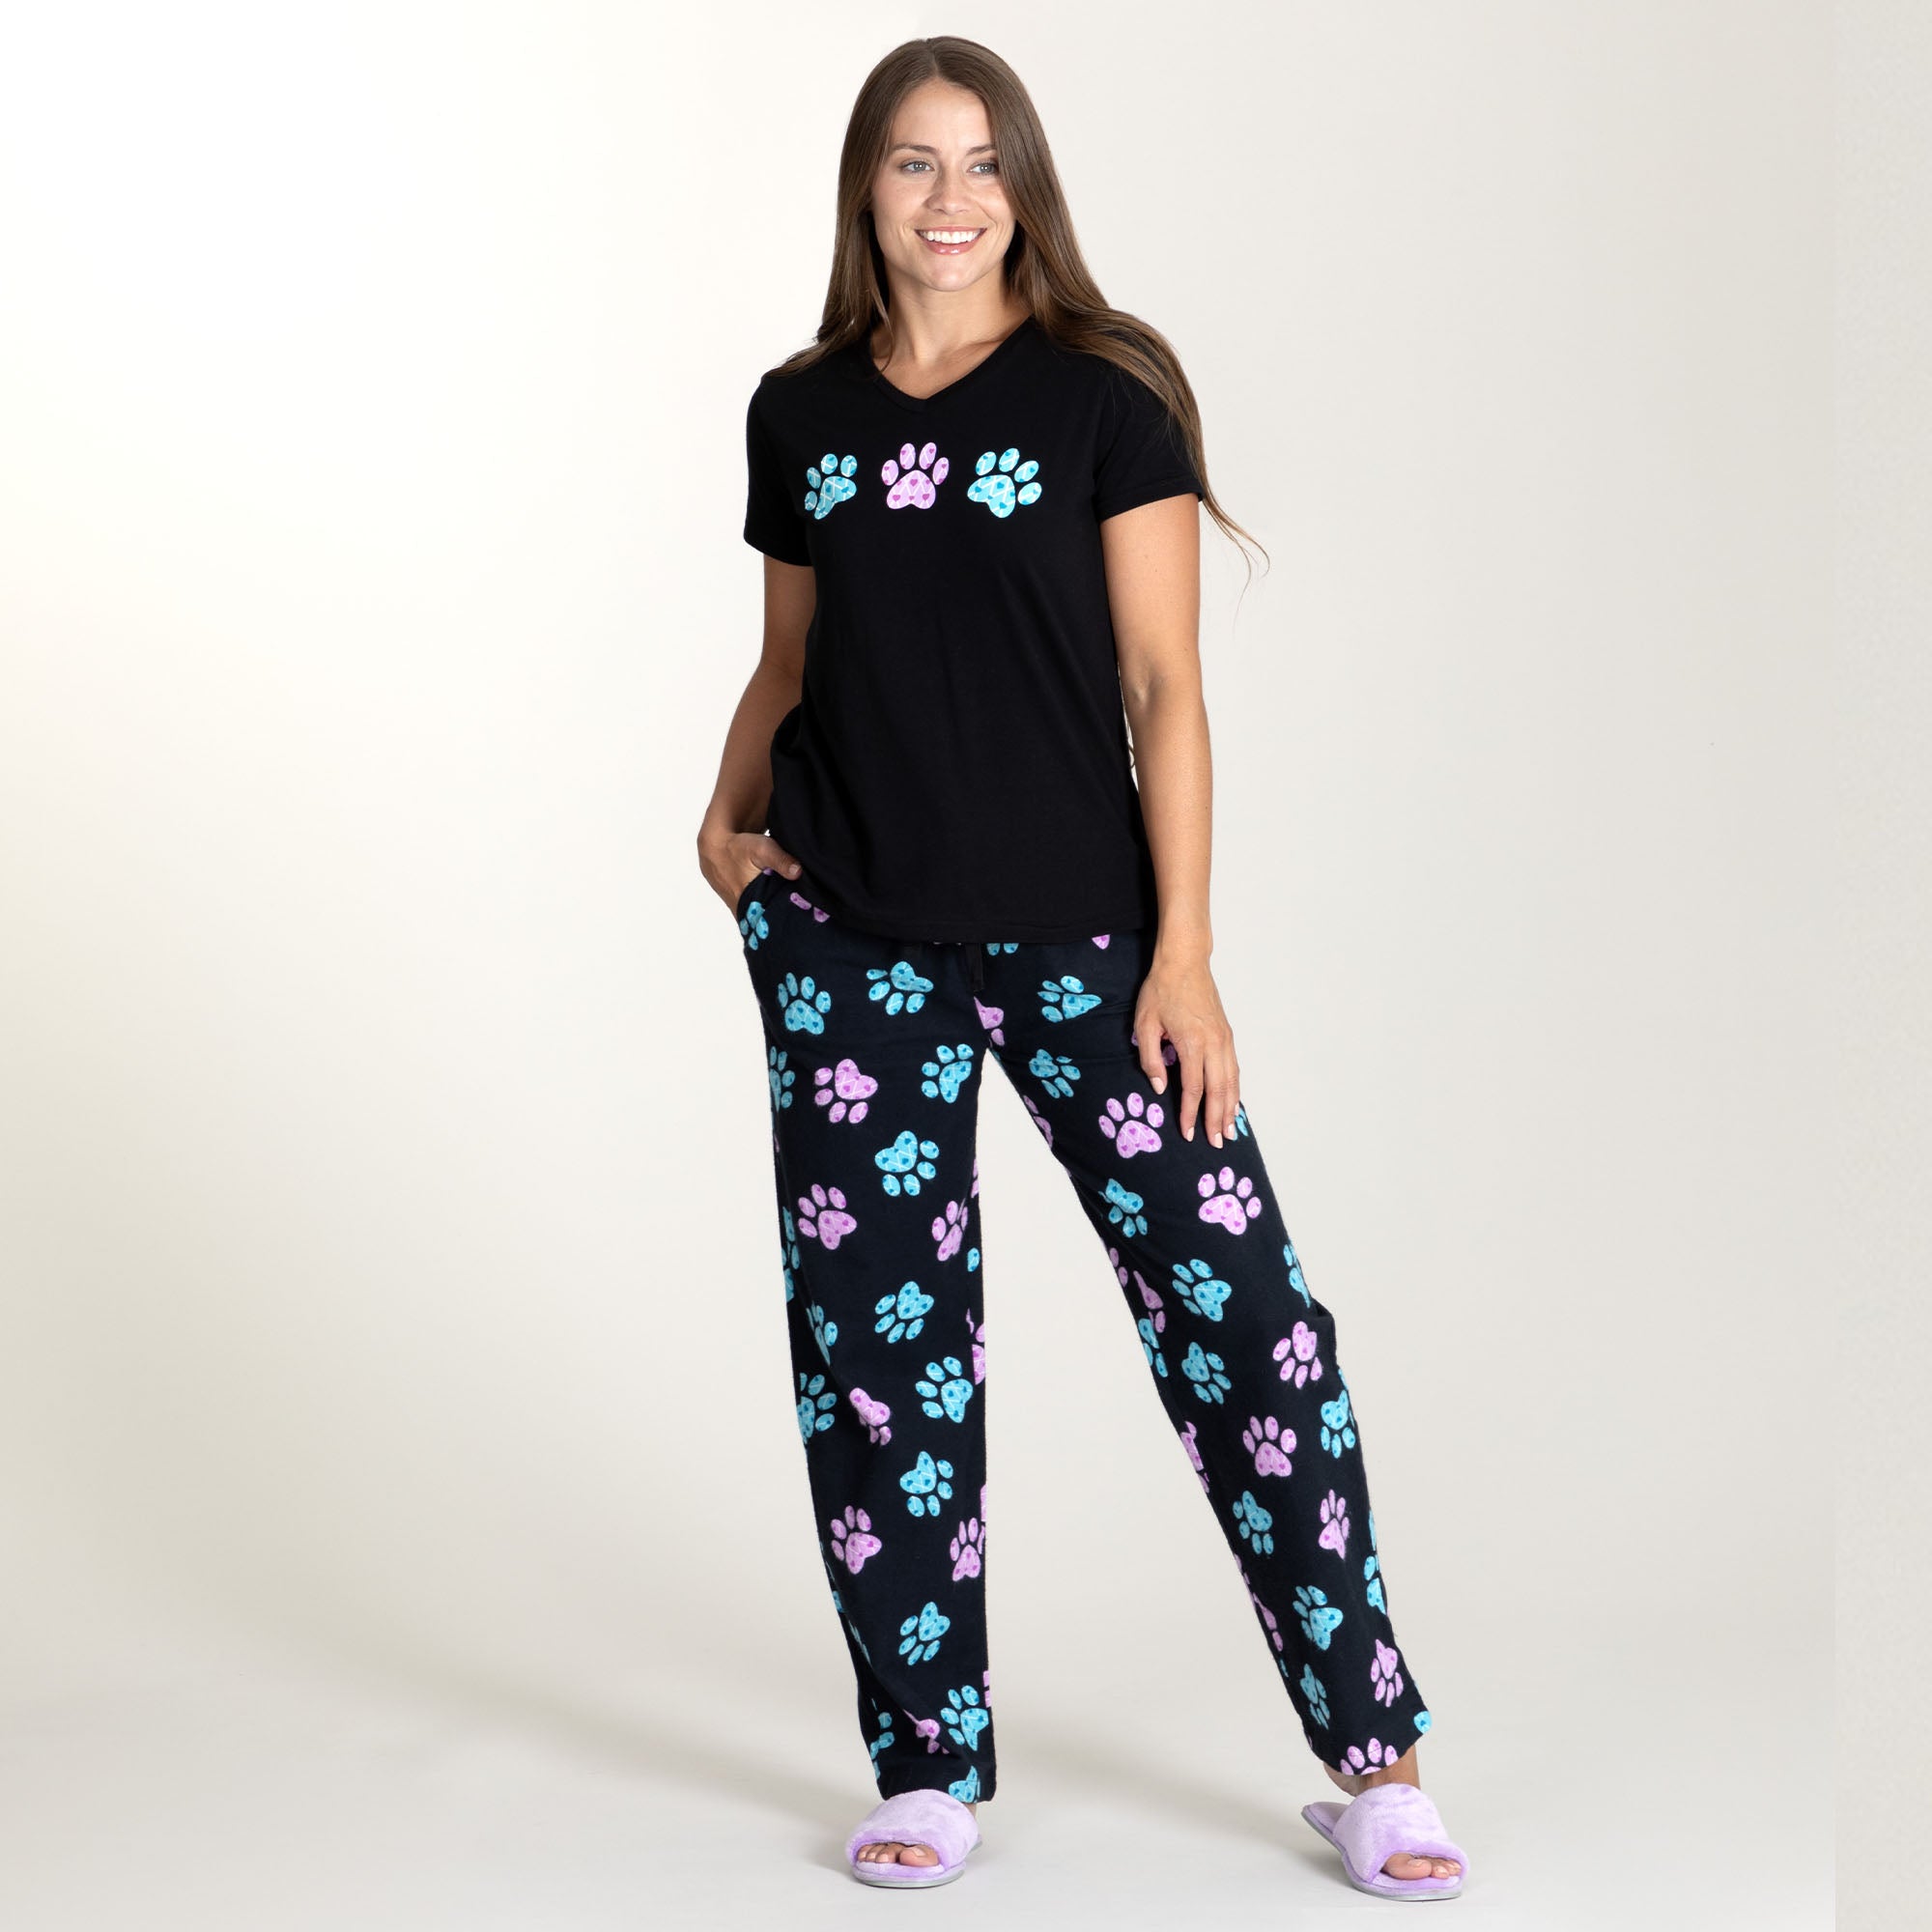 Argyle Paws Flannel Pajama Set - XL